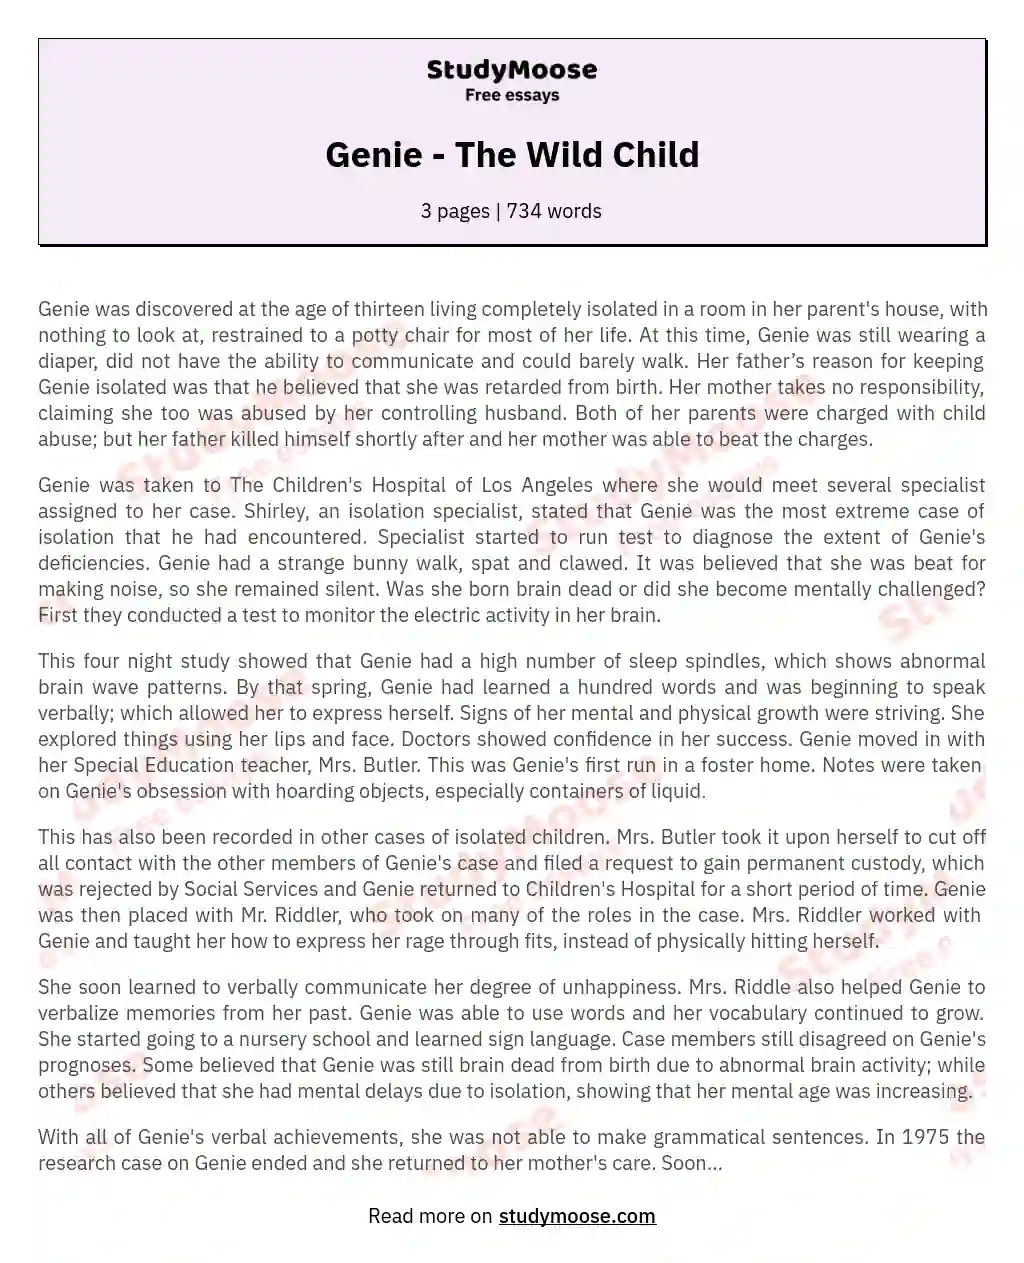 Genie - The Wild Child essay